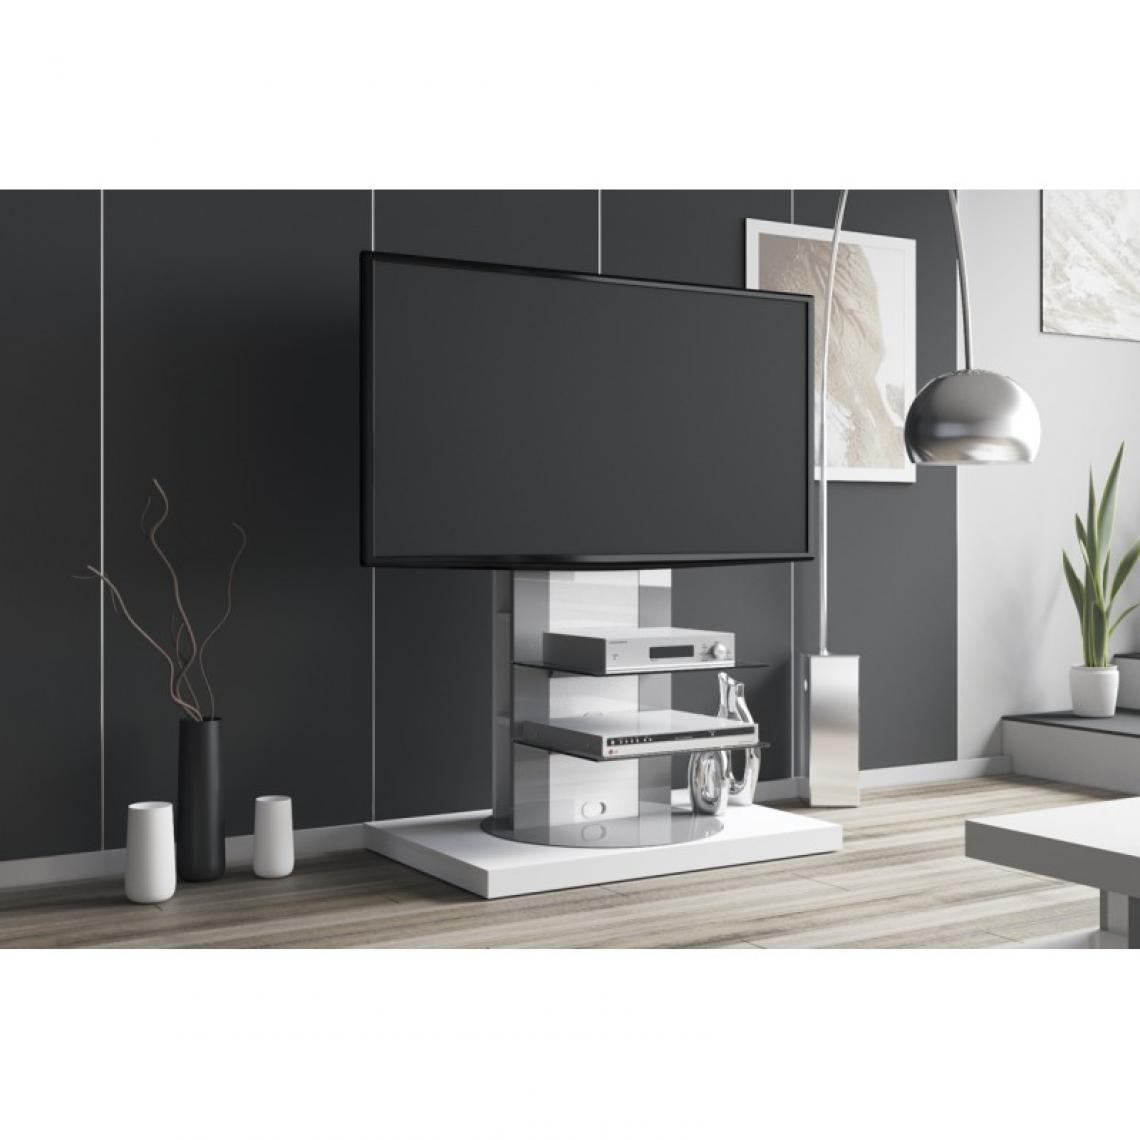 Carellia - Meuble TV design rotatif 126 cm x 90 cm x 59 cm - Blanc - Meubles TV, Hi-Fi